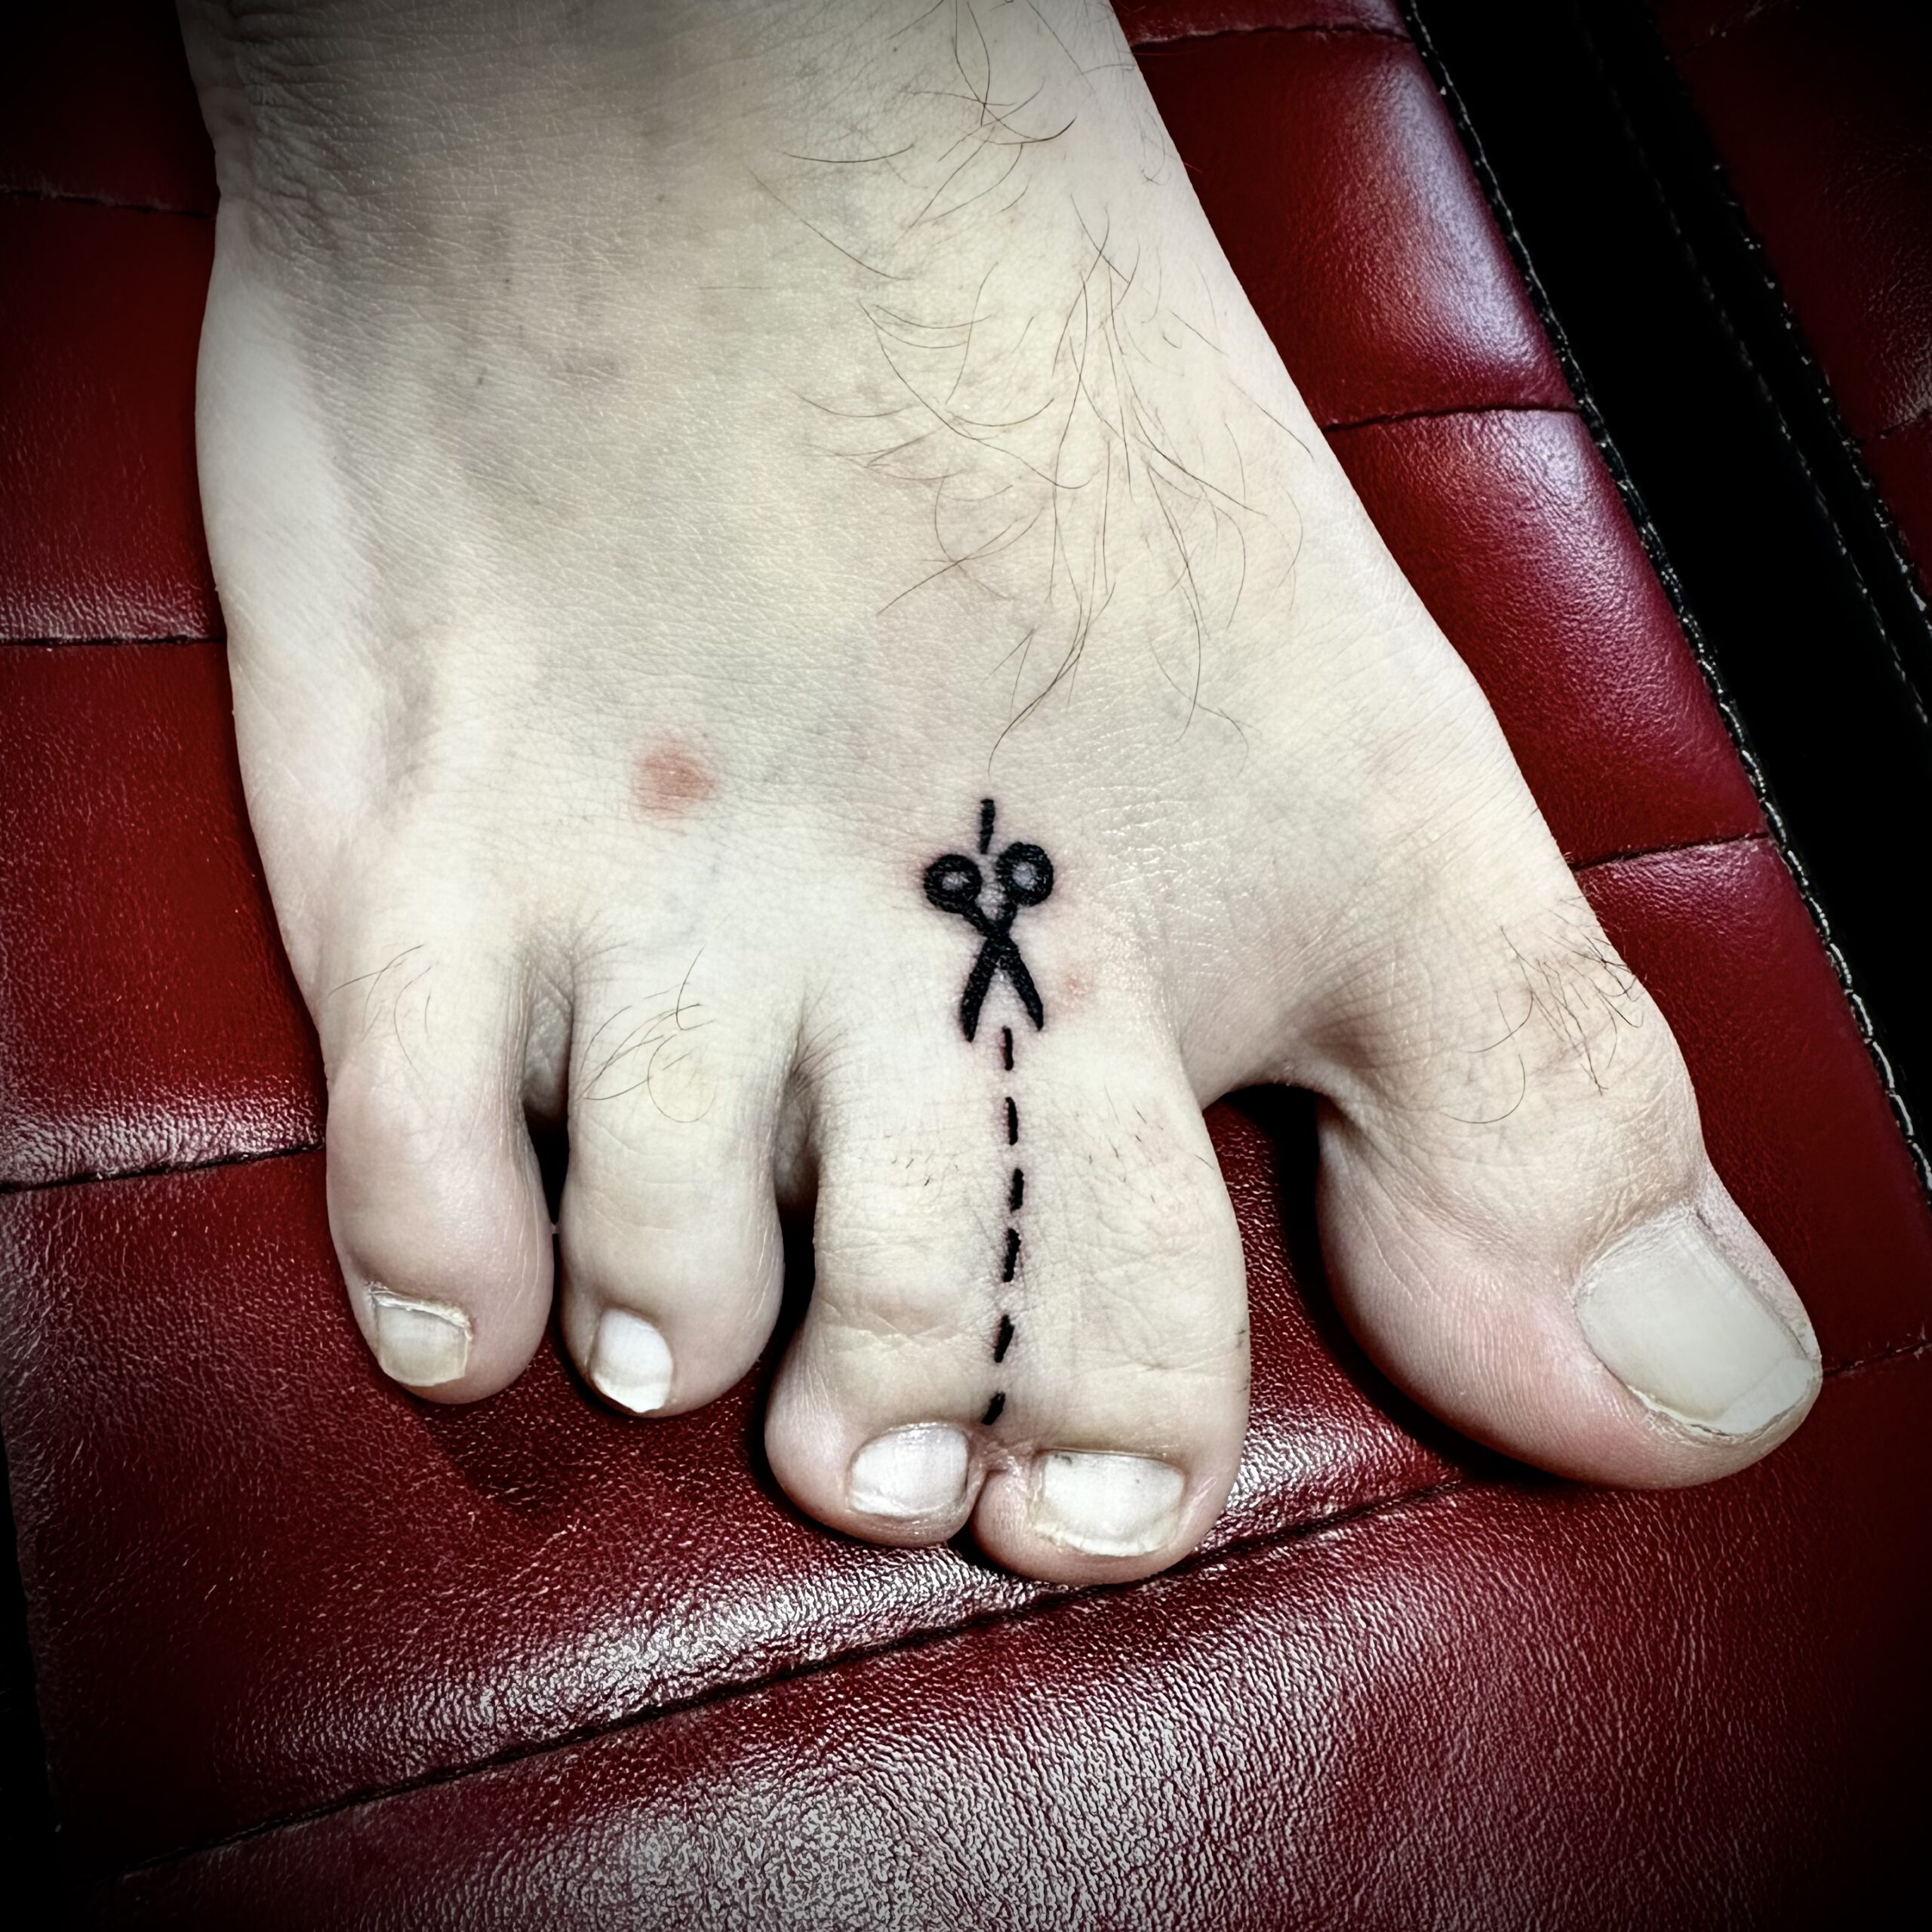 tattoo of scissors on a foot